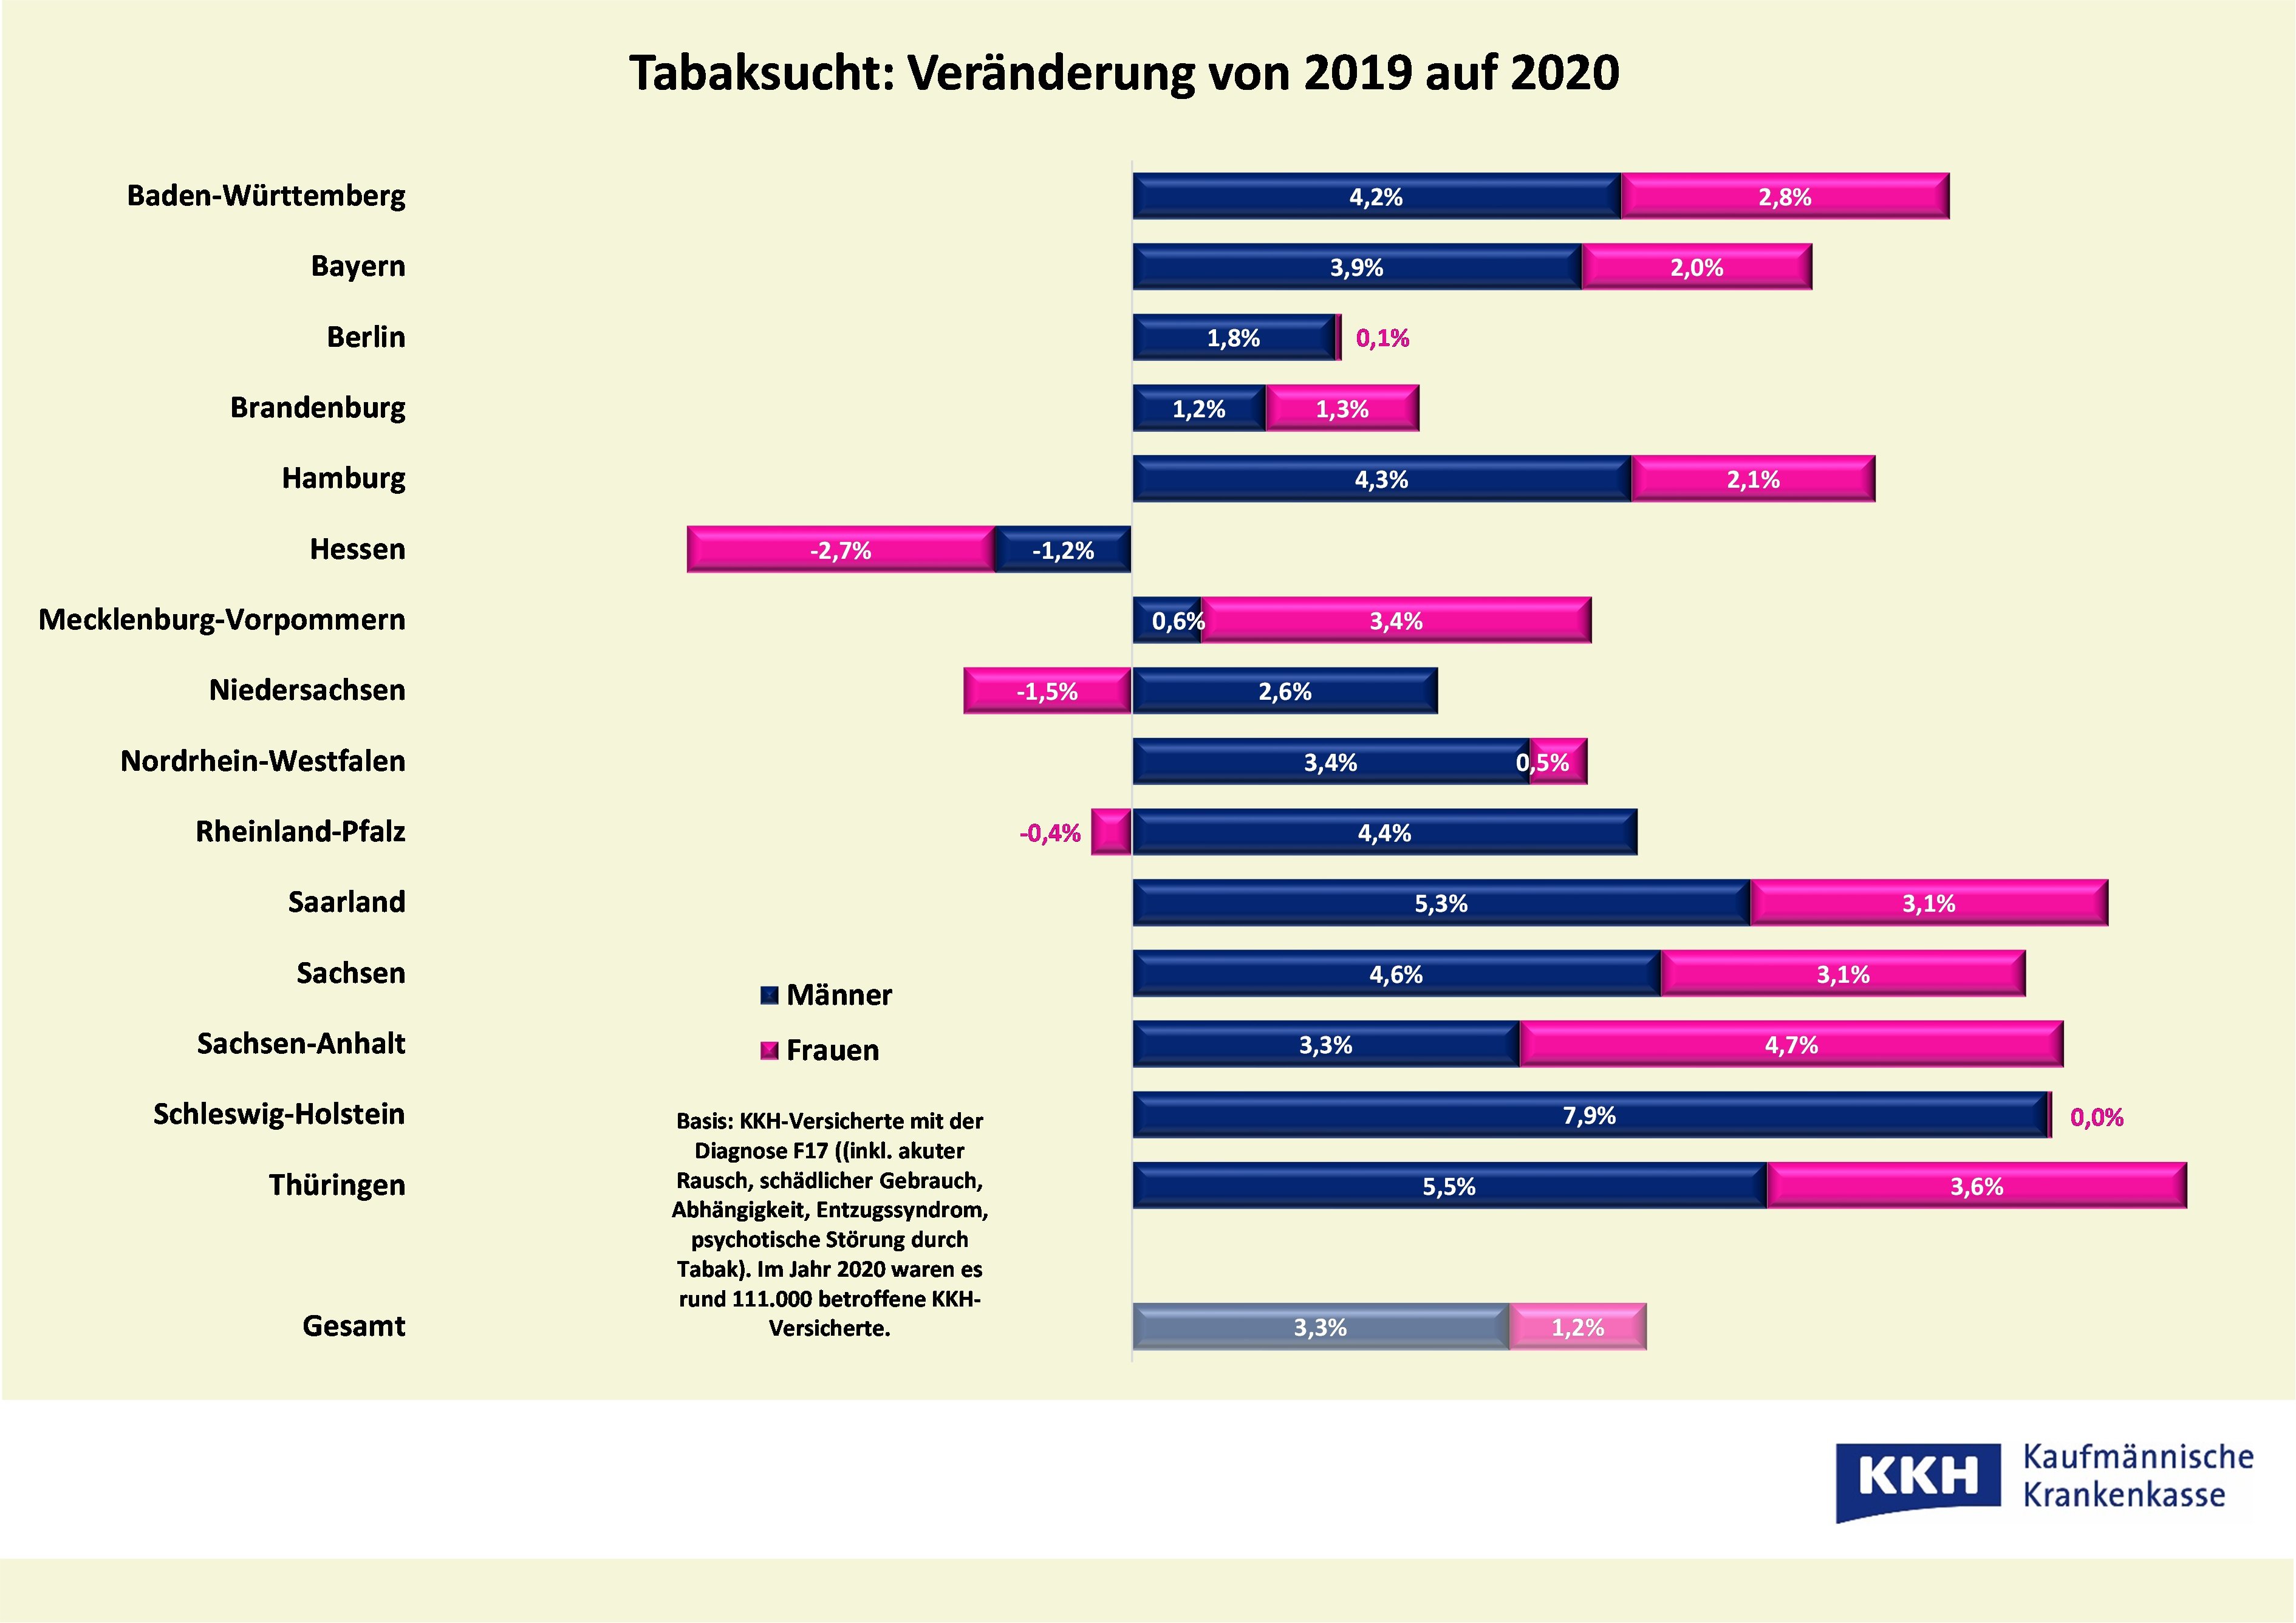 KKH / Veränderung der Tabaksucht 2019 auf 2020 nach Geschlecht